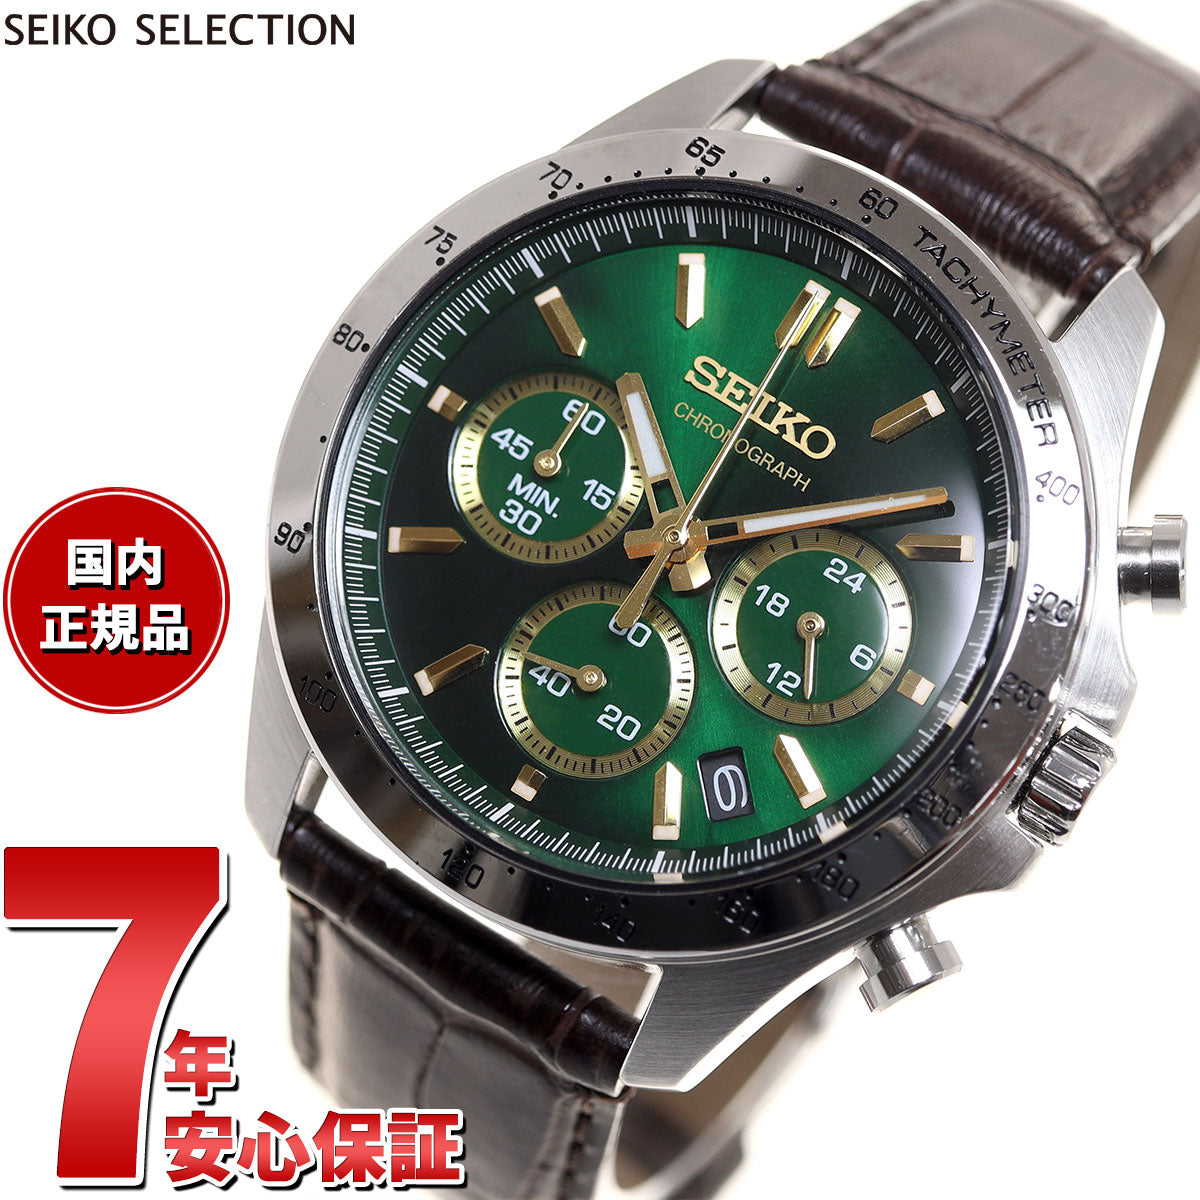 セイコー セレクション SEIKO SELECTION 8Tクロノ SBTR017 腕時計